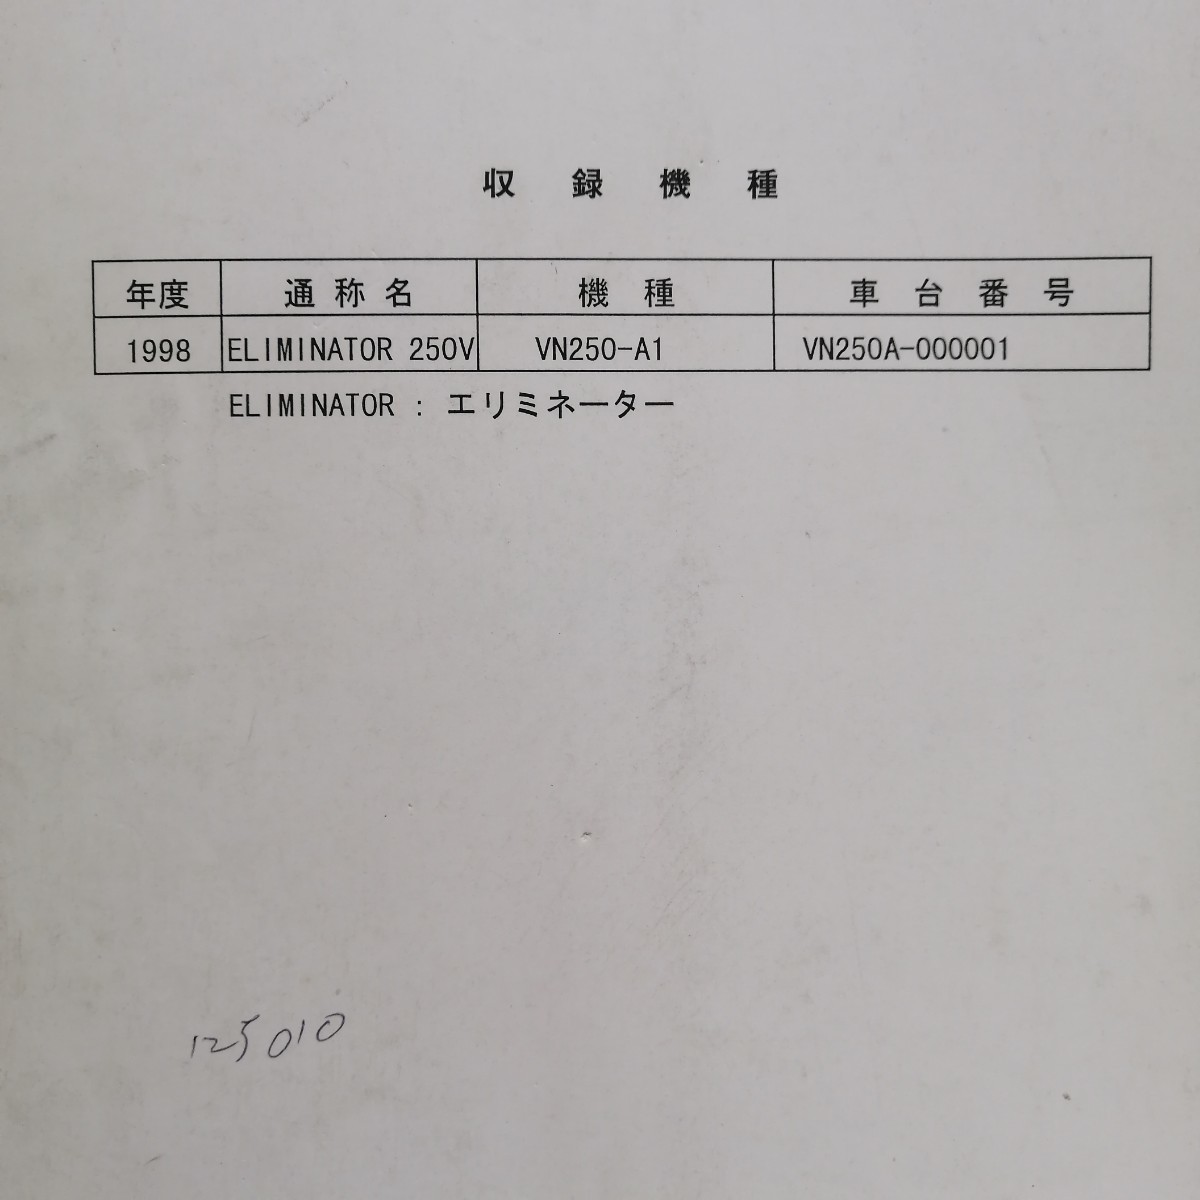  Kawasaki Eliminator 250V руководство по обслуживанию ELIMINATOR техническое обслуживание восстановление сервисная книжка книга по ремонту 